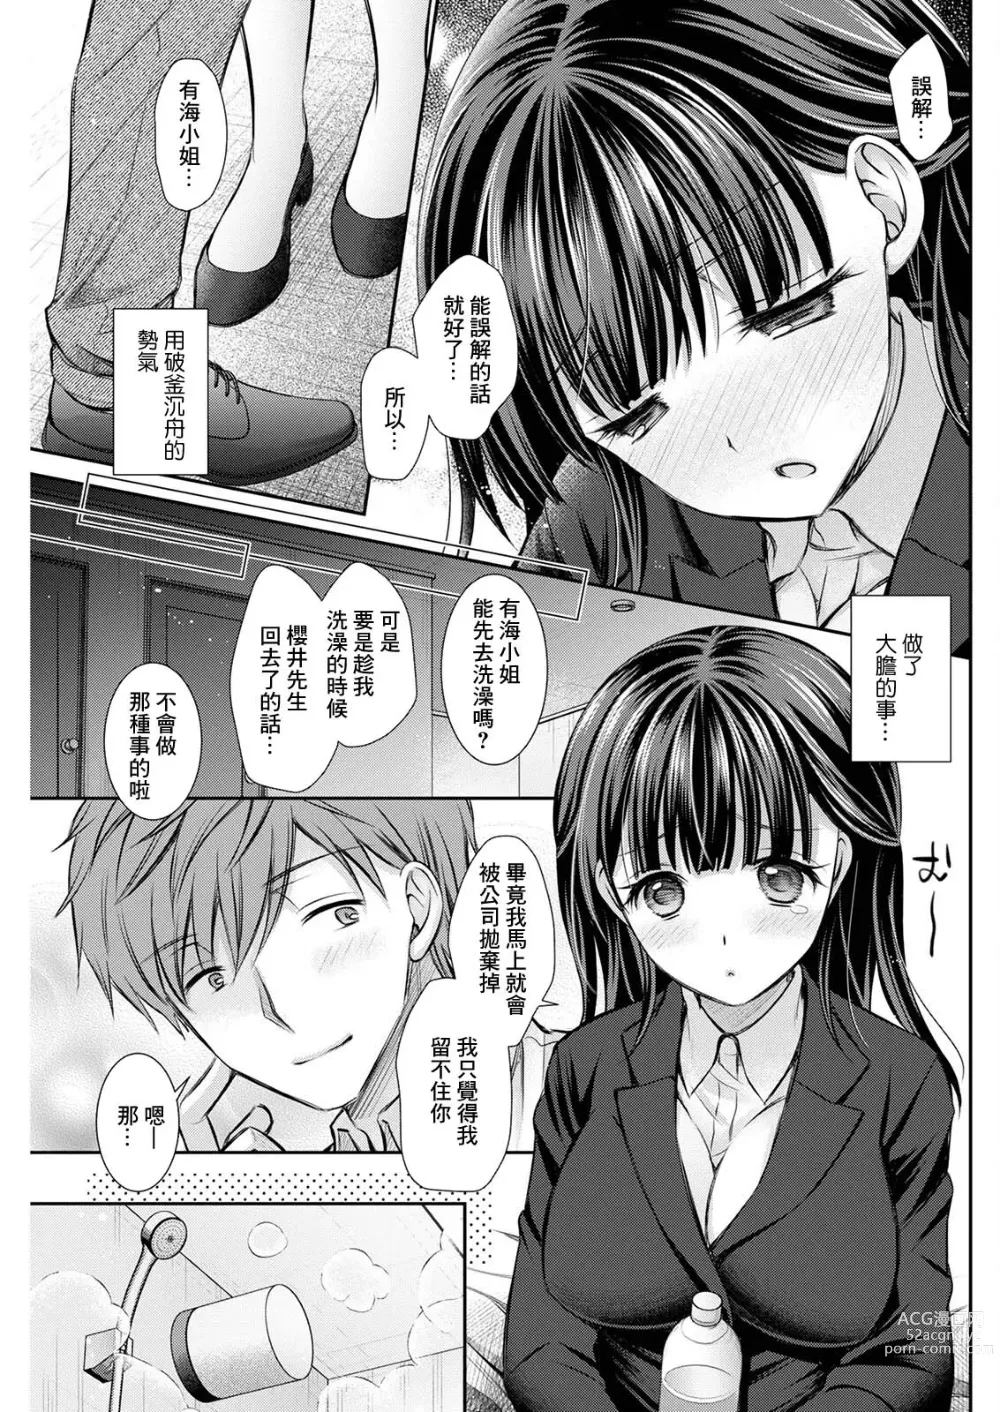 Page 5 of manga Wazawai Tenjite